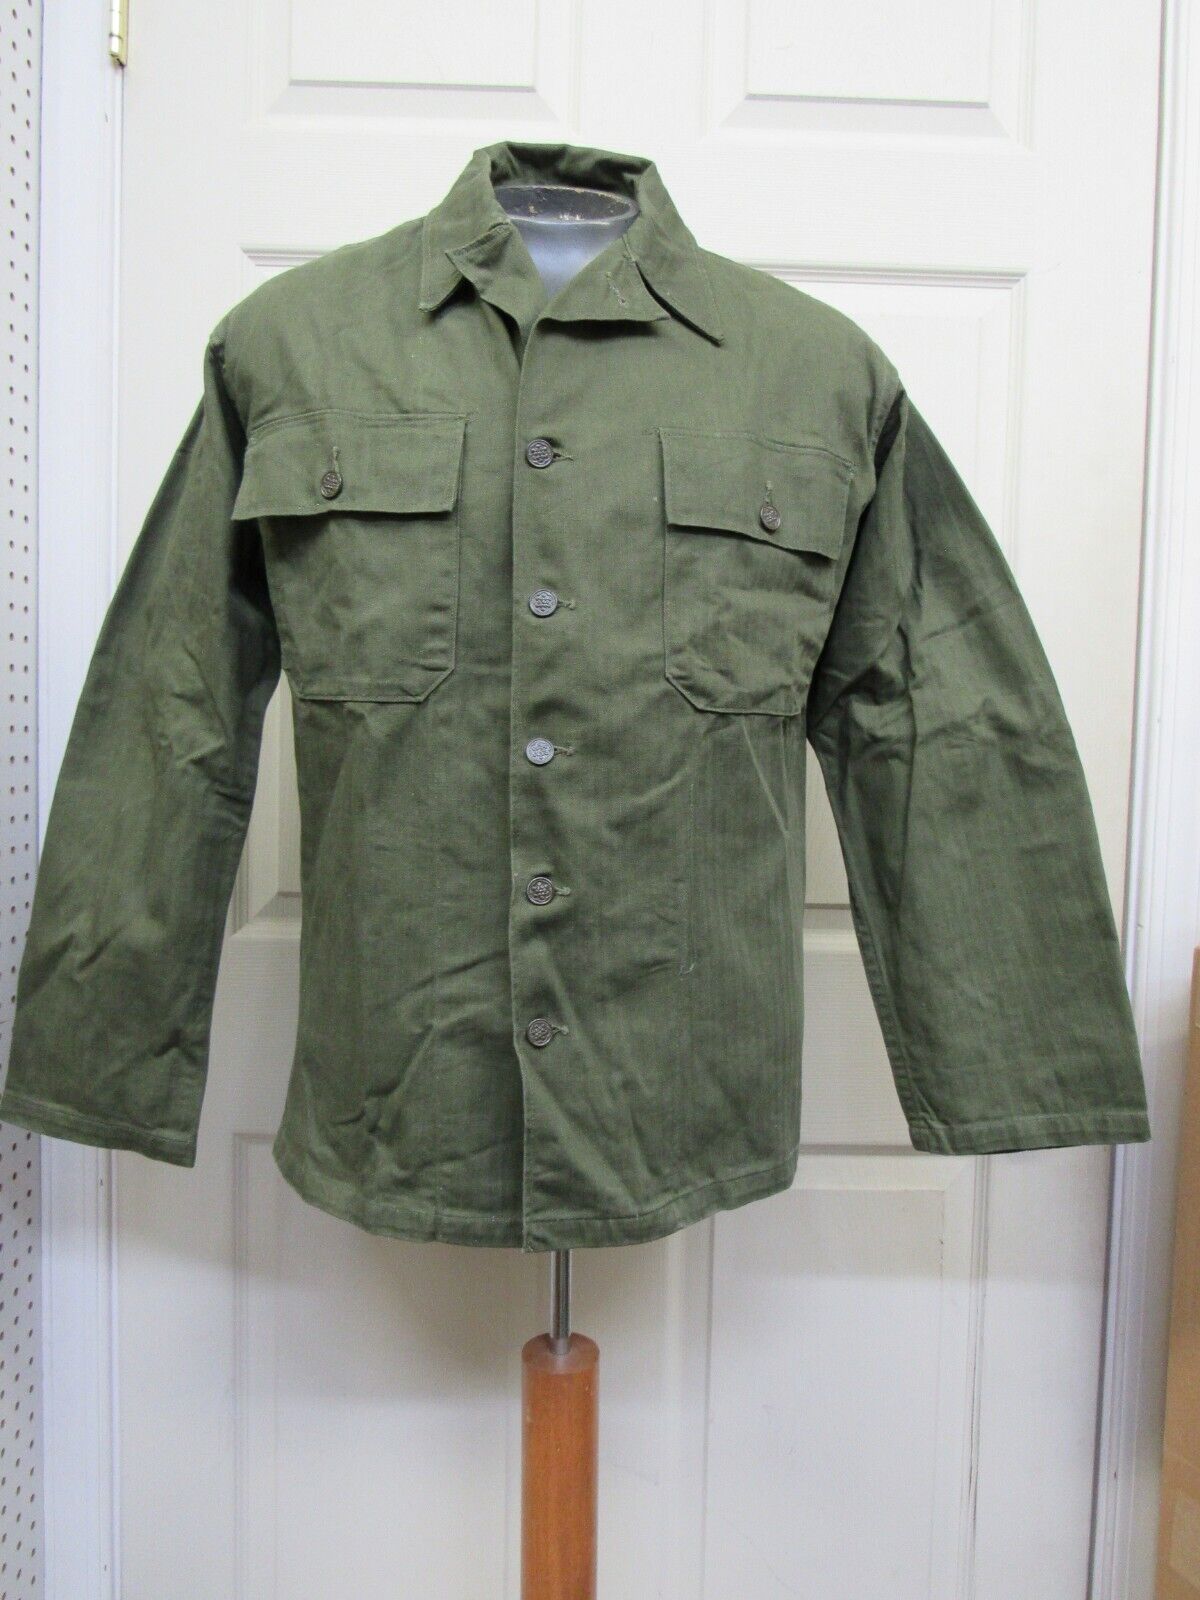 Post WW2 US HBT Herringbone Twill Shirt Jacket OD-7 13 Star Buttons Small 1948 